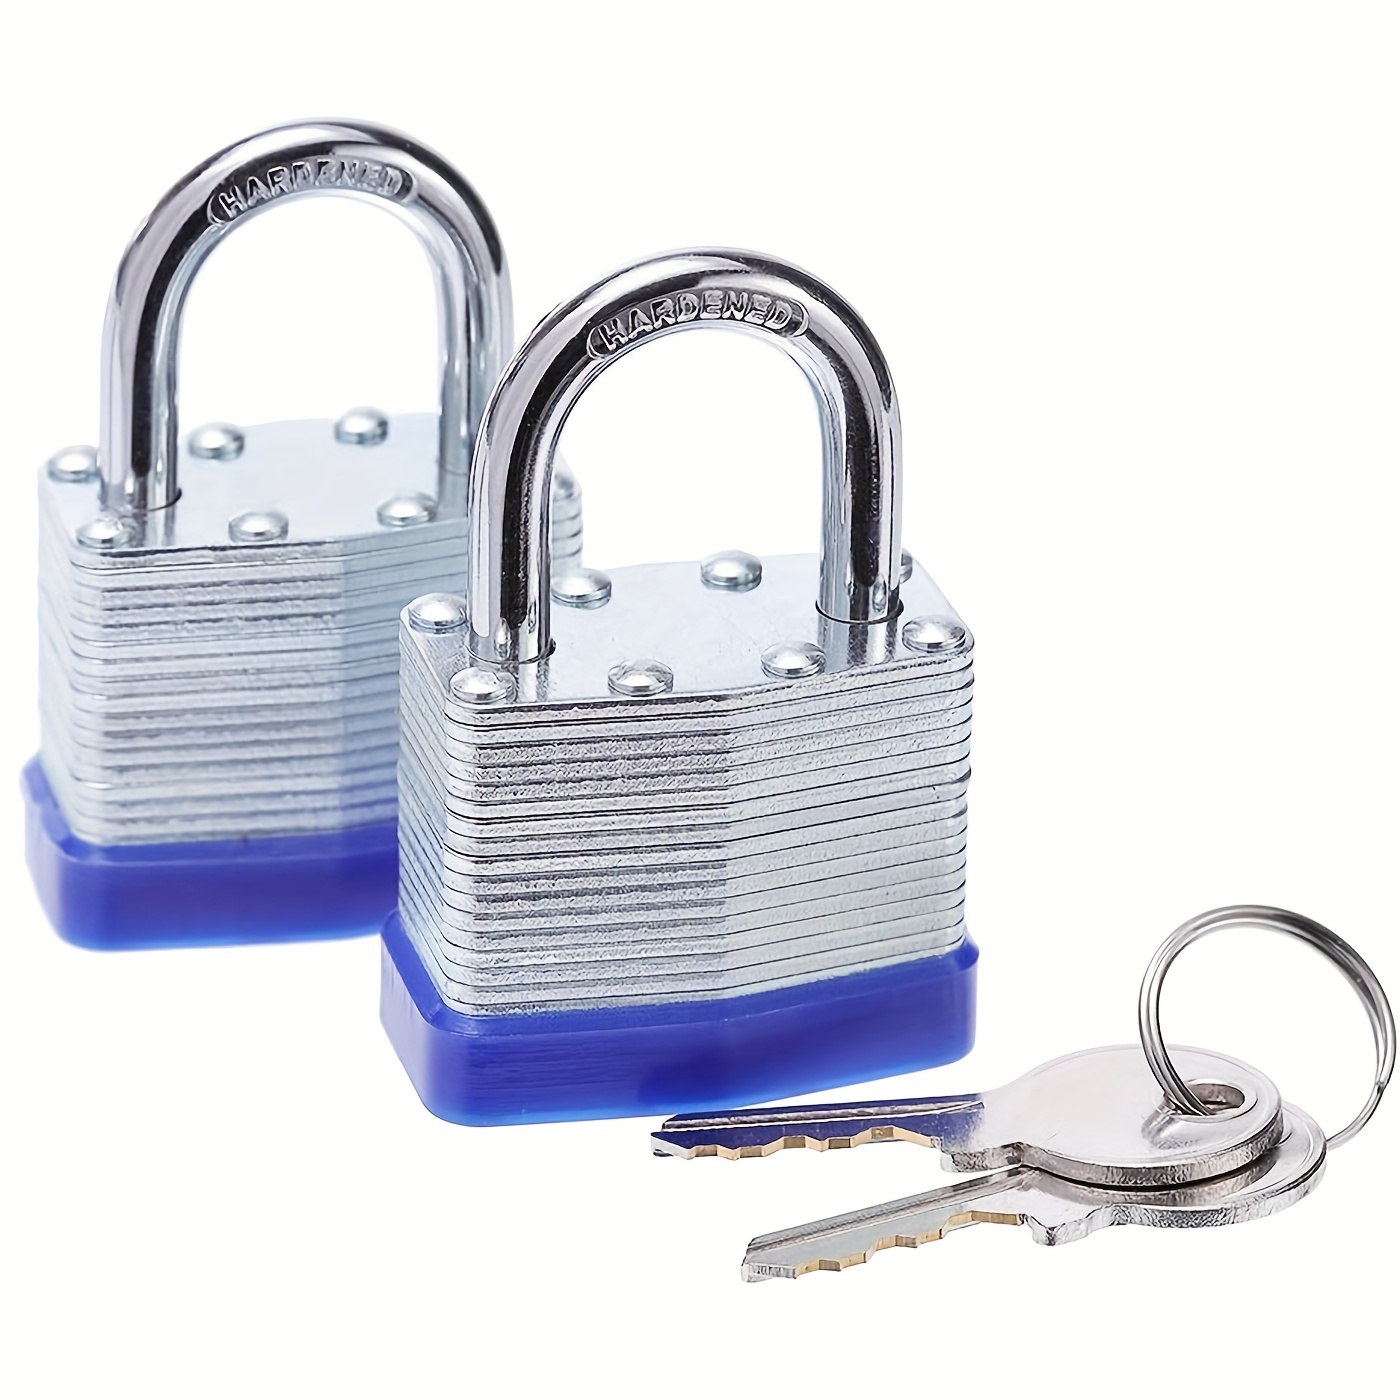 

1pc Laminated Steel Key Lock, Alik, Master Lock Outdoor Padlocks, Lock Set With Keys, Keyed Alike Padlocks